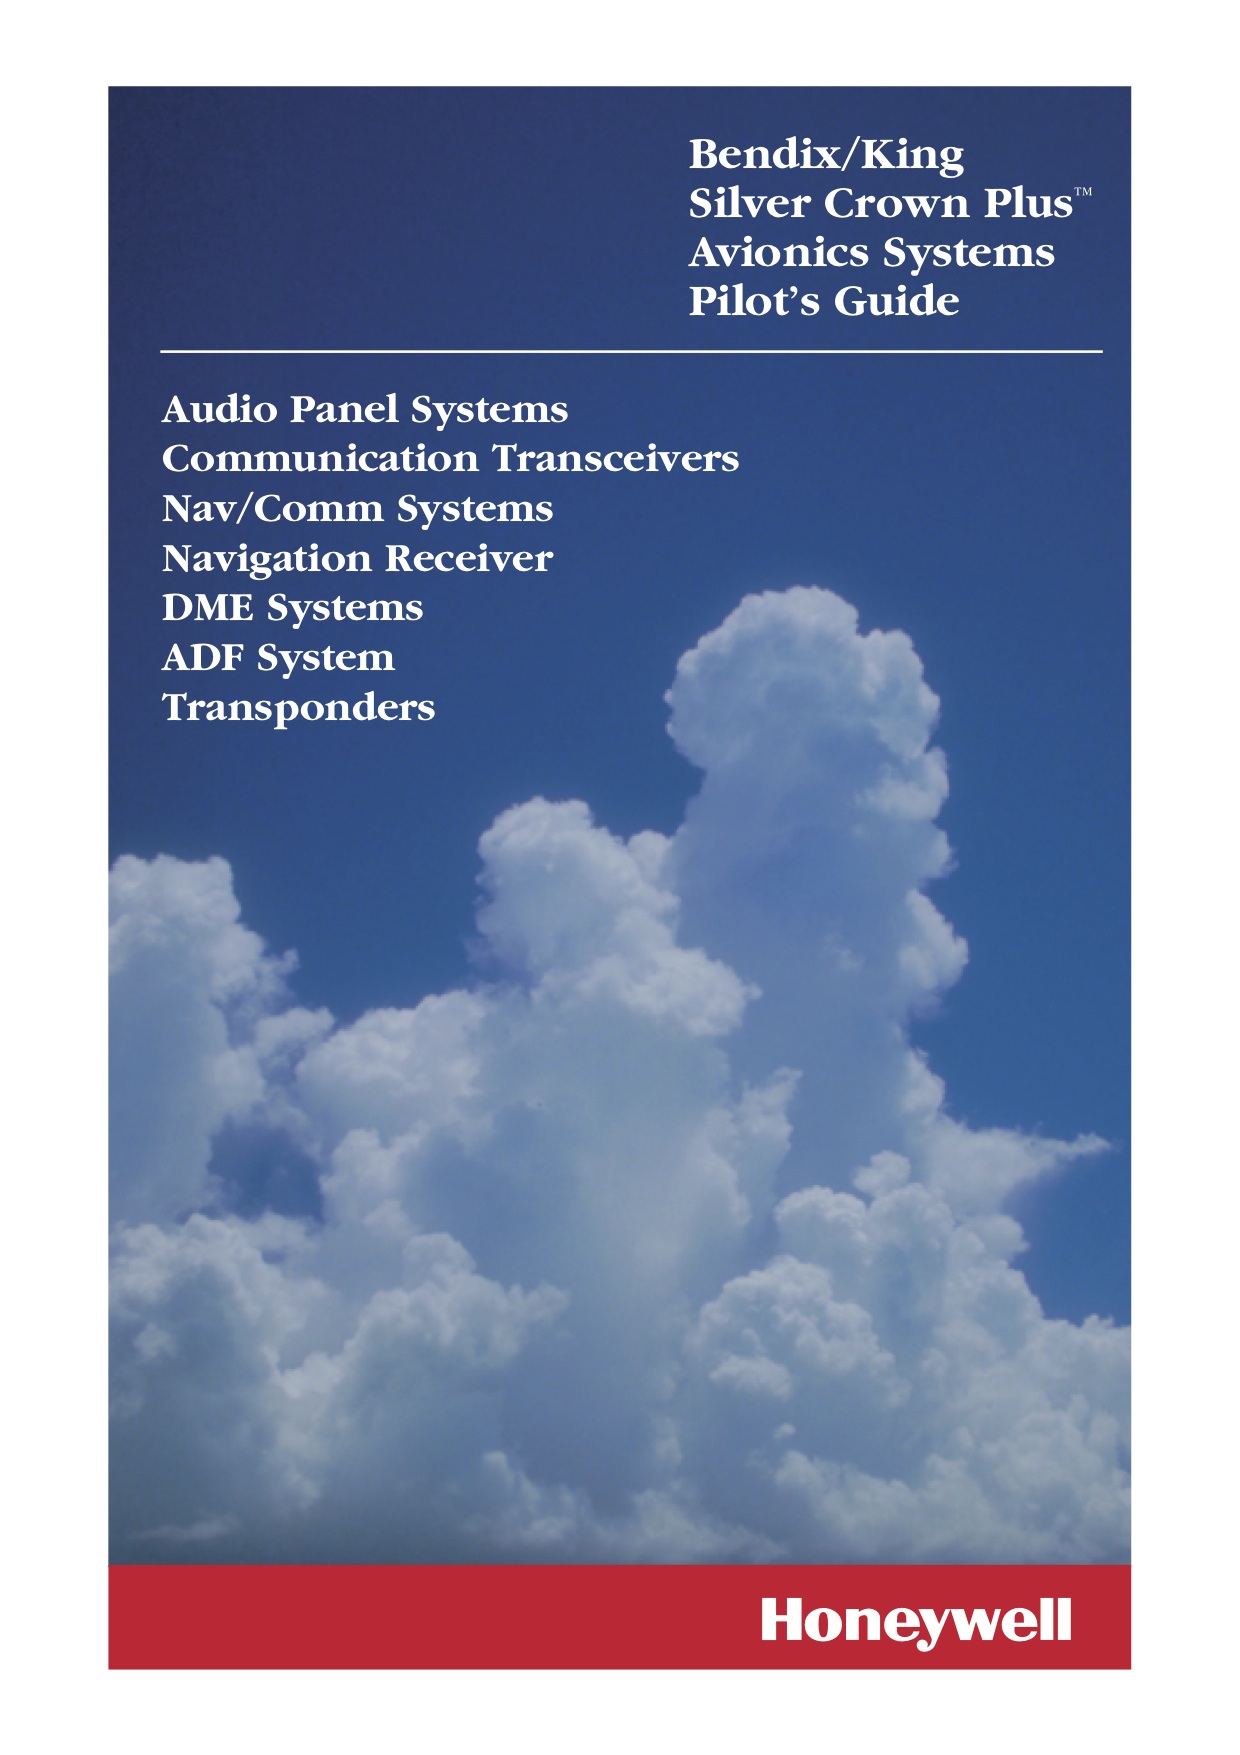 Bendix fcs 810 autopilot service manual